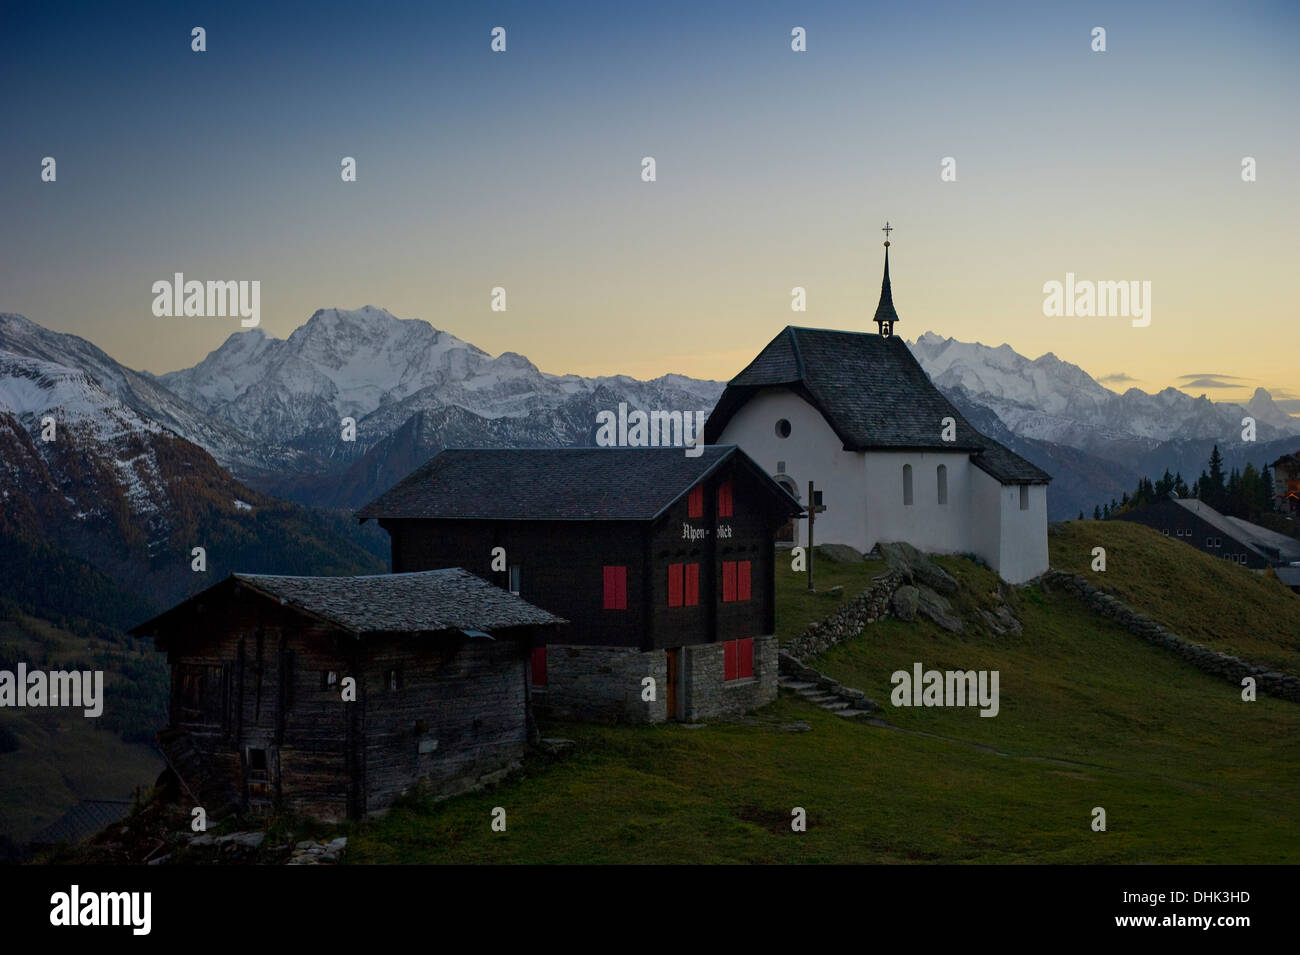 Mountain village at Bettmeralp at sunset, Canton of Valais, Switzerland, Europe Stock Photo